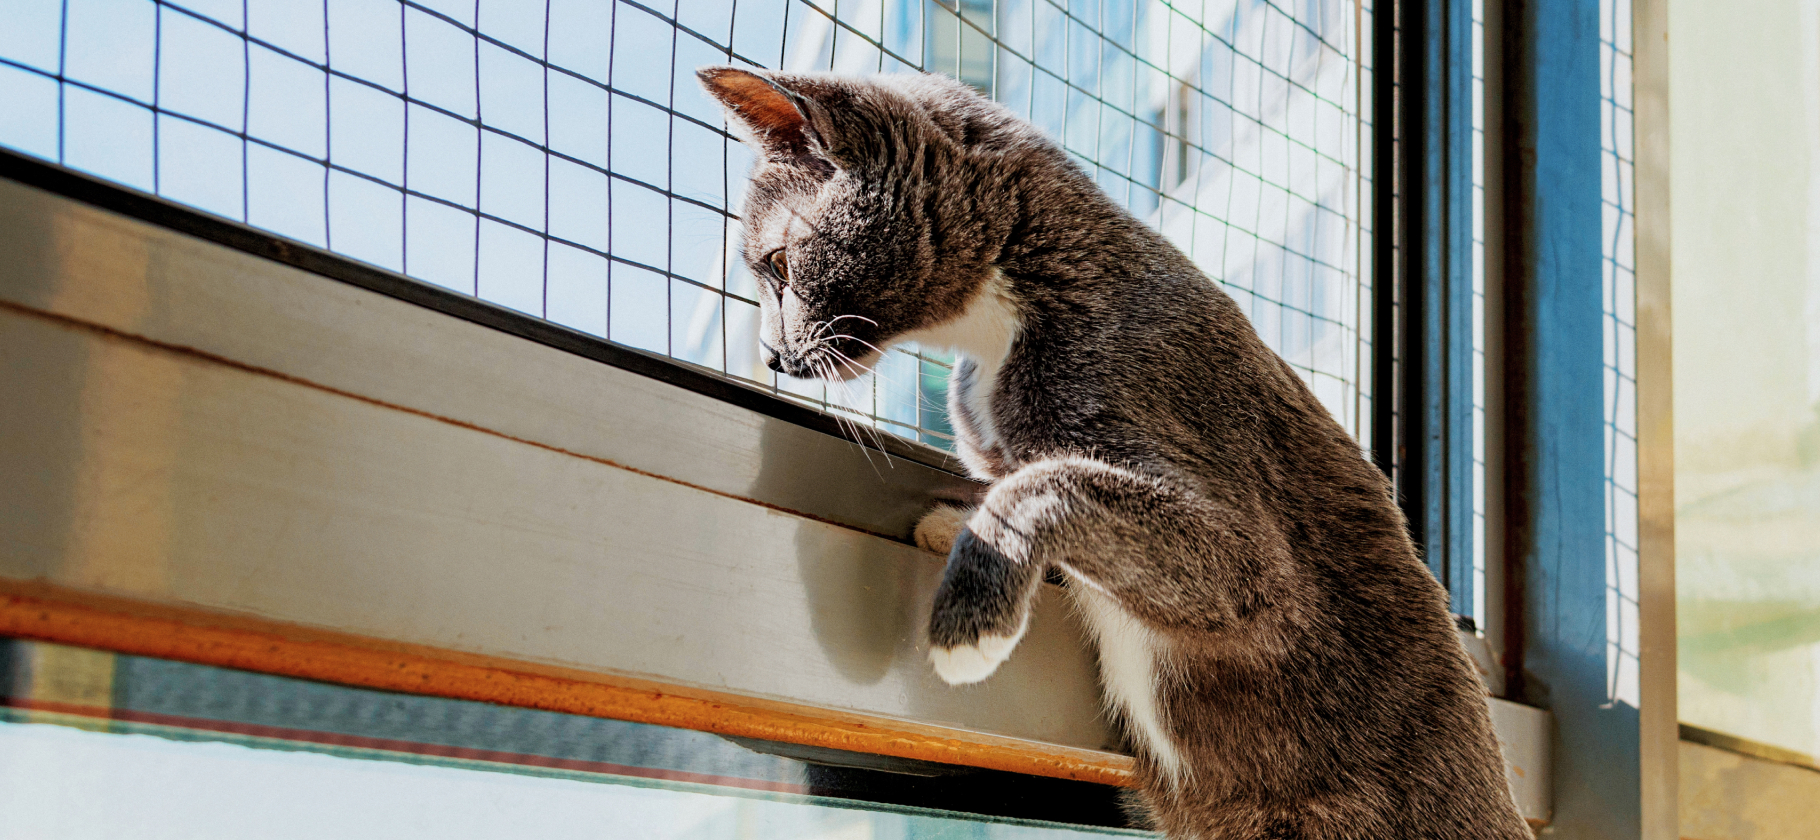 «Если что — кошачья судьба будет печаль­ной»: 4 способа не дать коту выпасть из окна